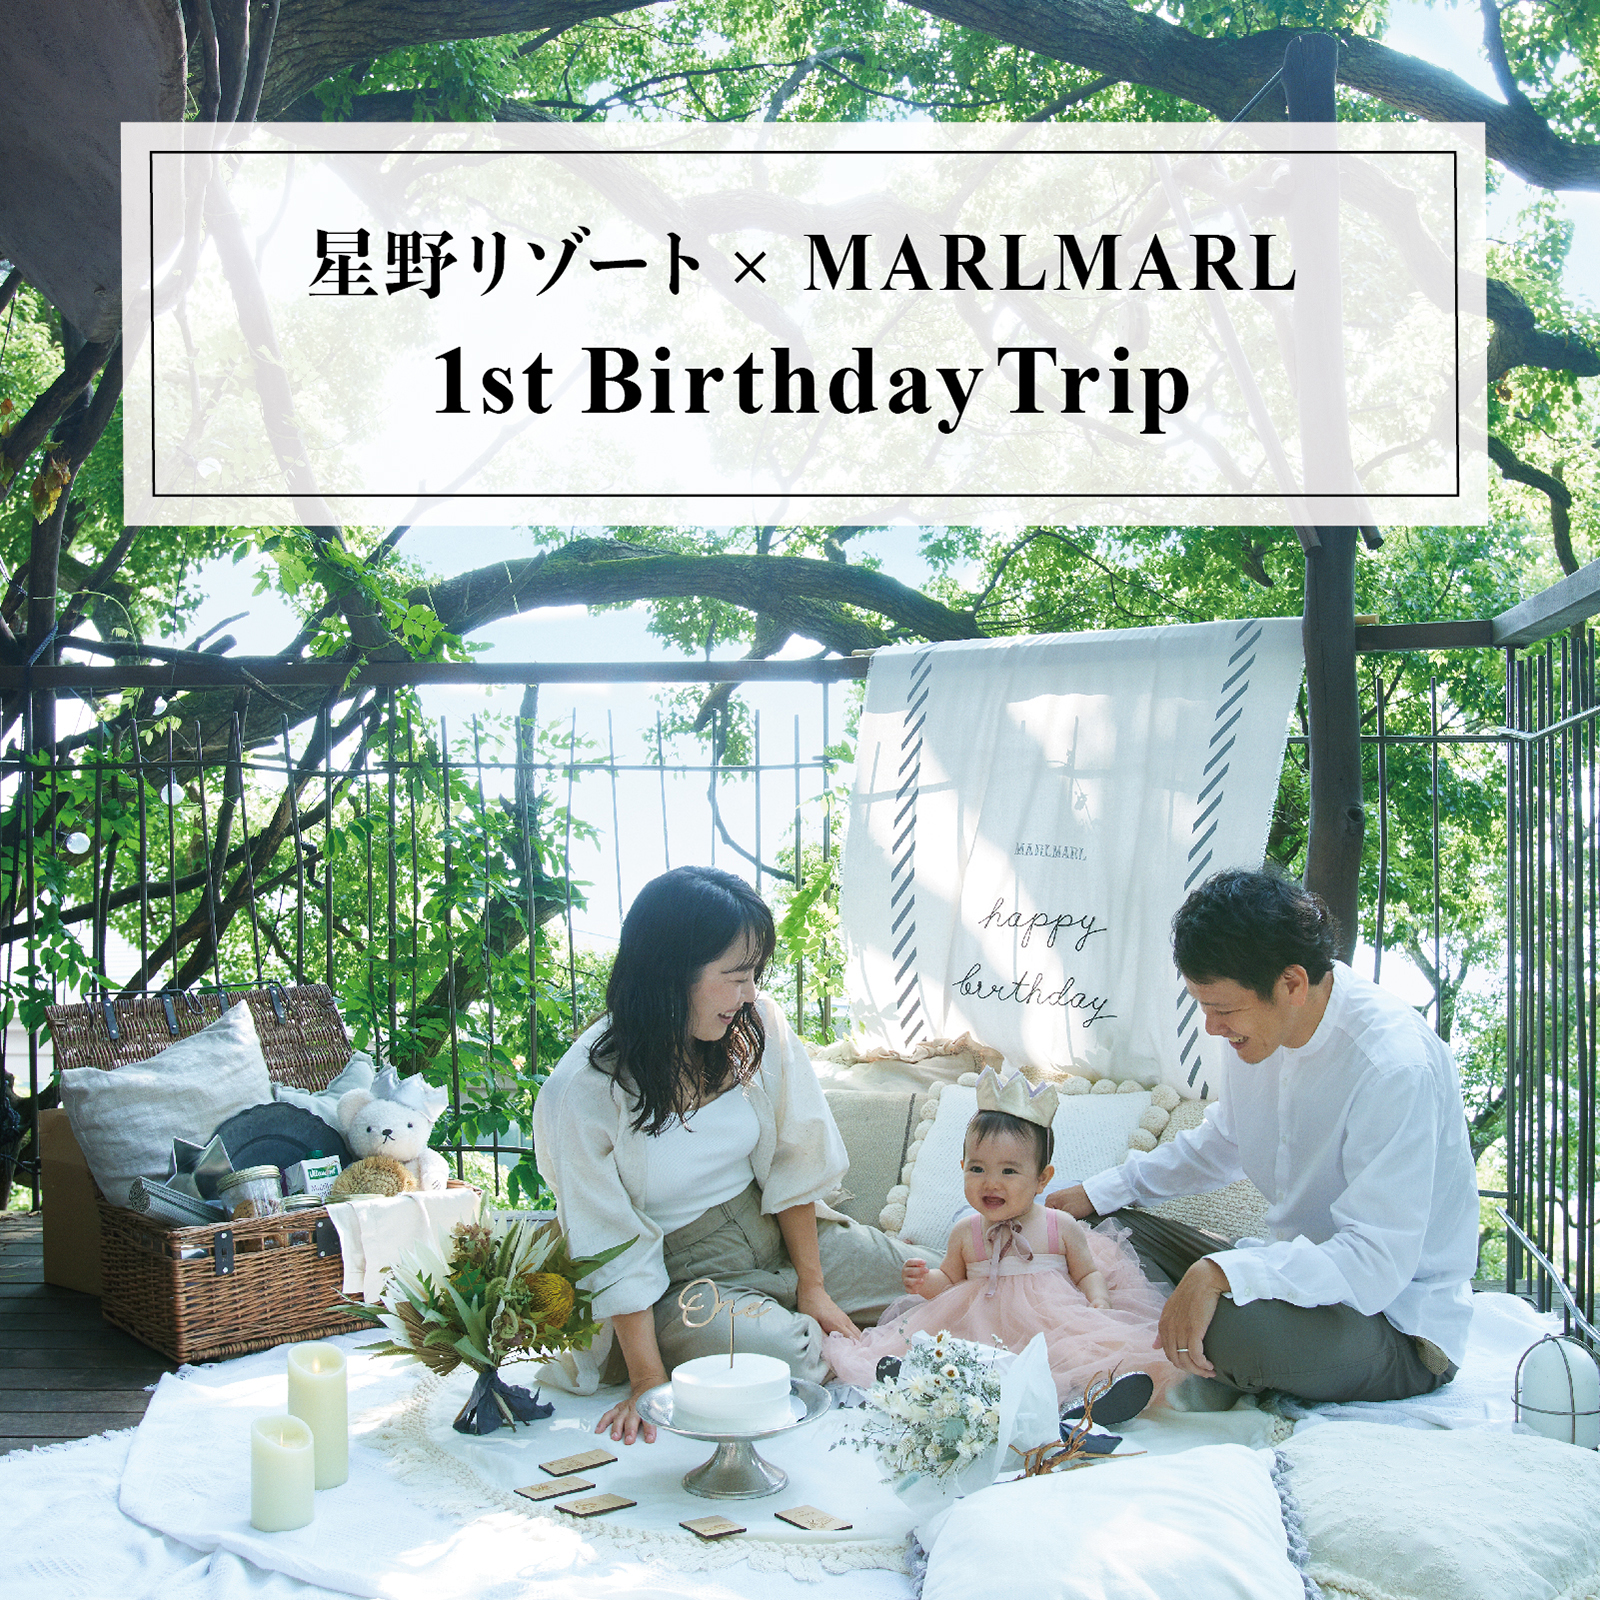 《星野リゾート　リゾナーレと特別な旅をプロデュース》 MARLMARL 1st Birthday Trip 8.6(FRI.)